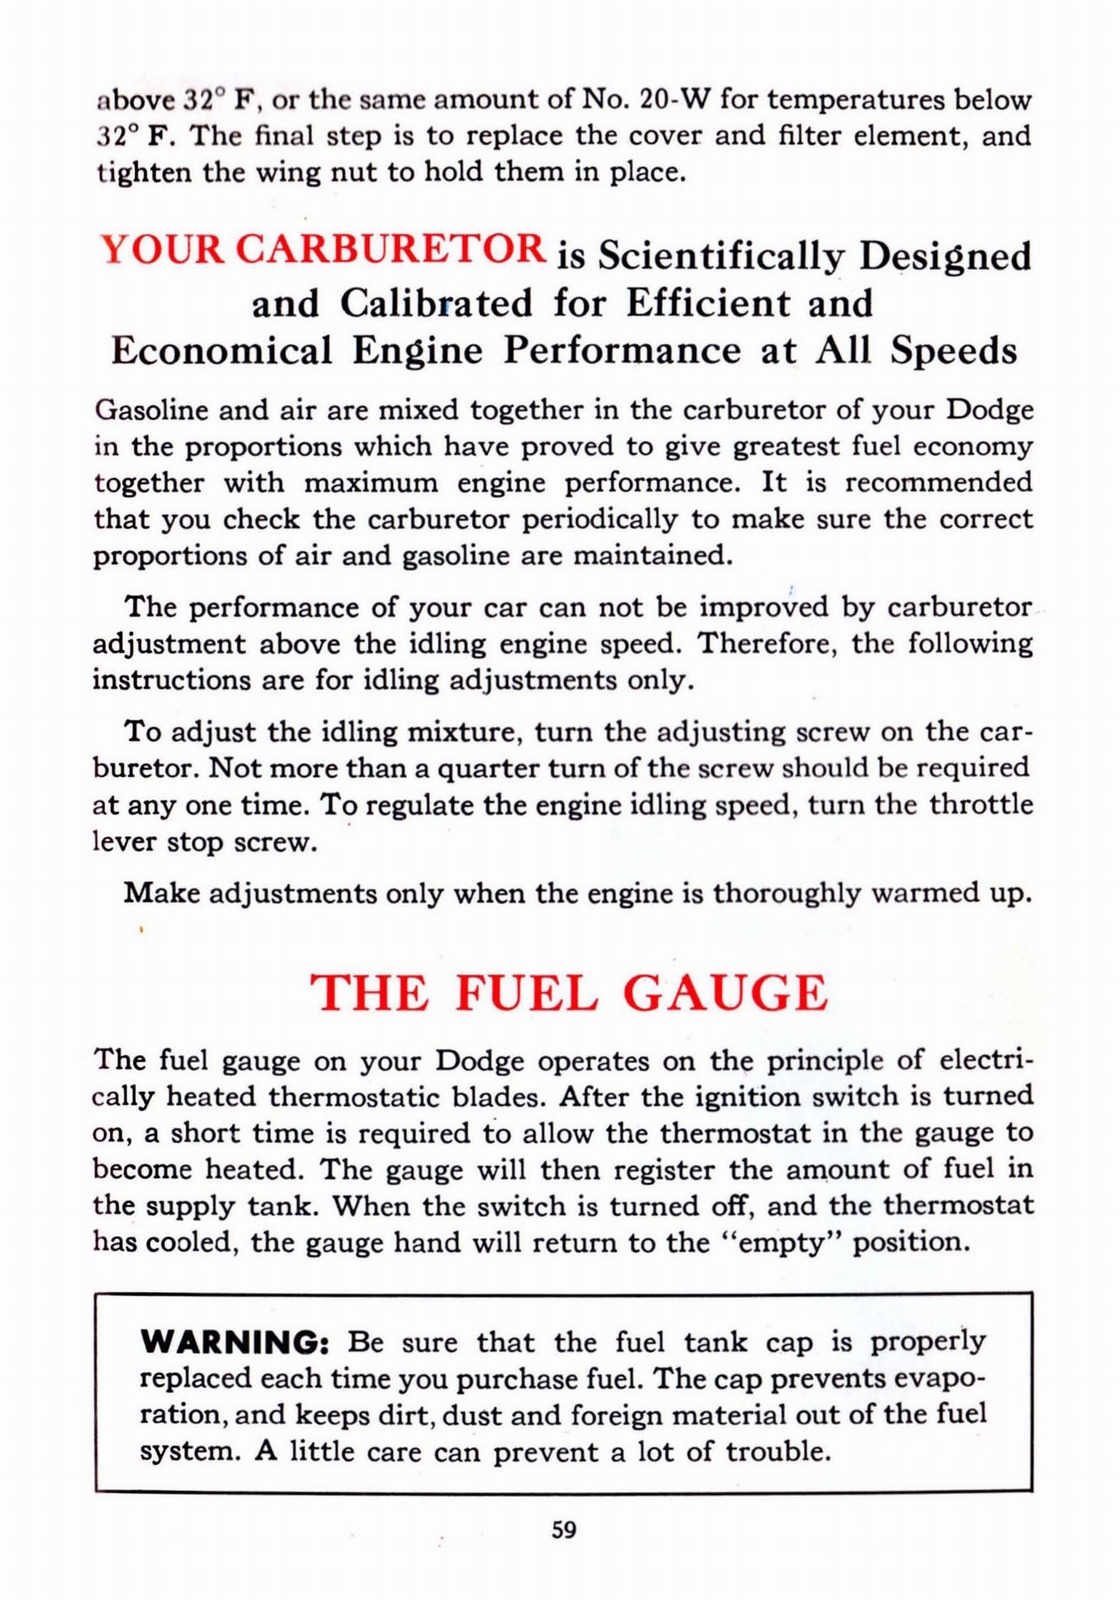 n_1941 Dodge Owners Manual-59.jpg